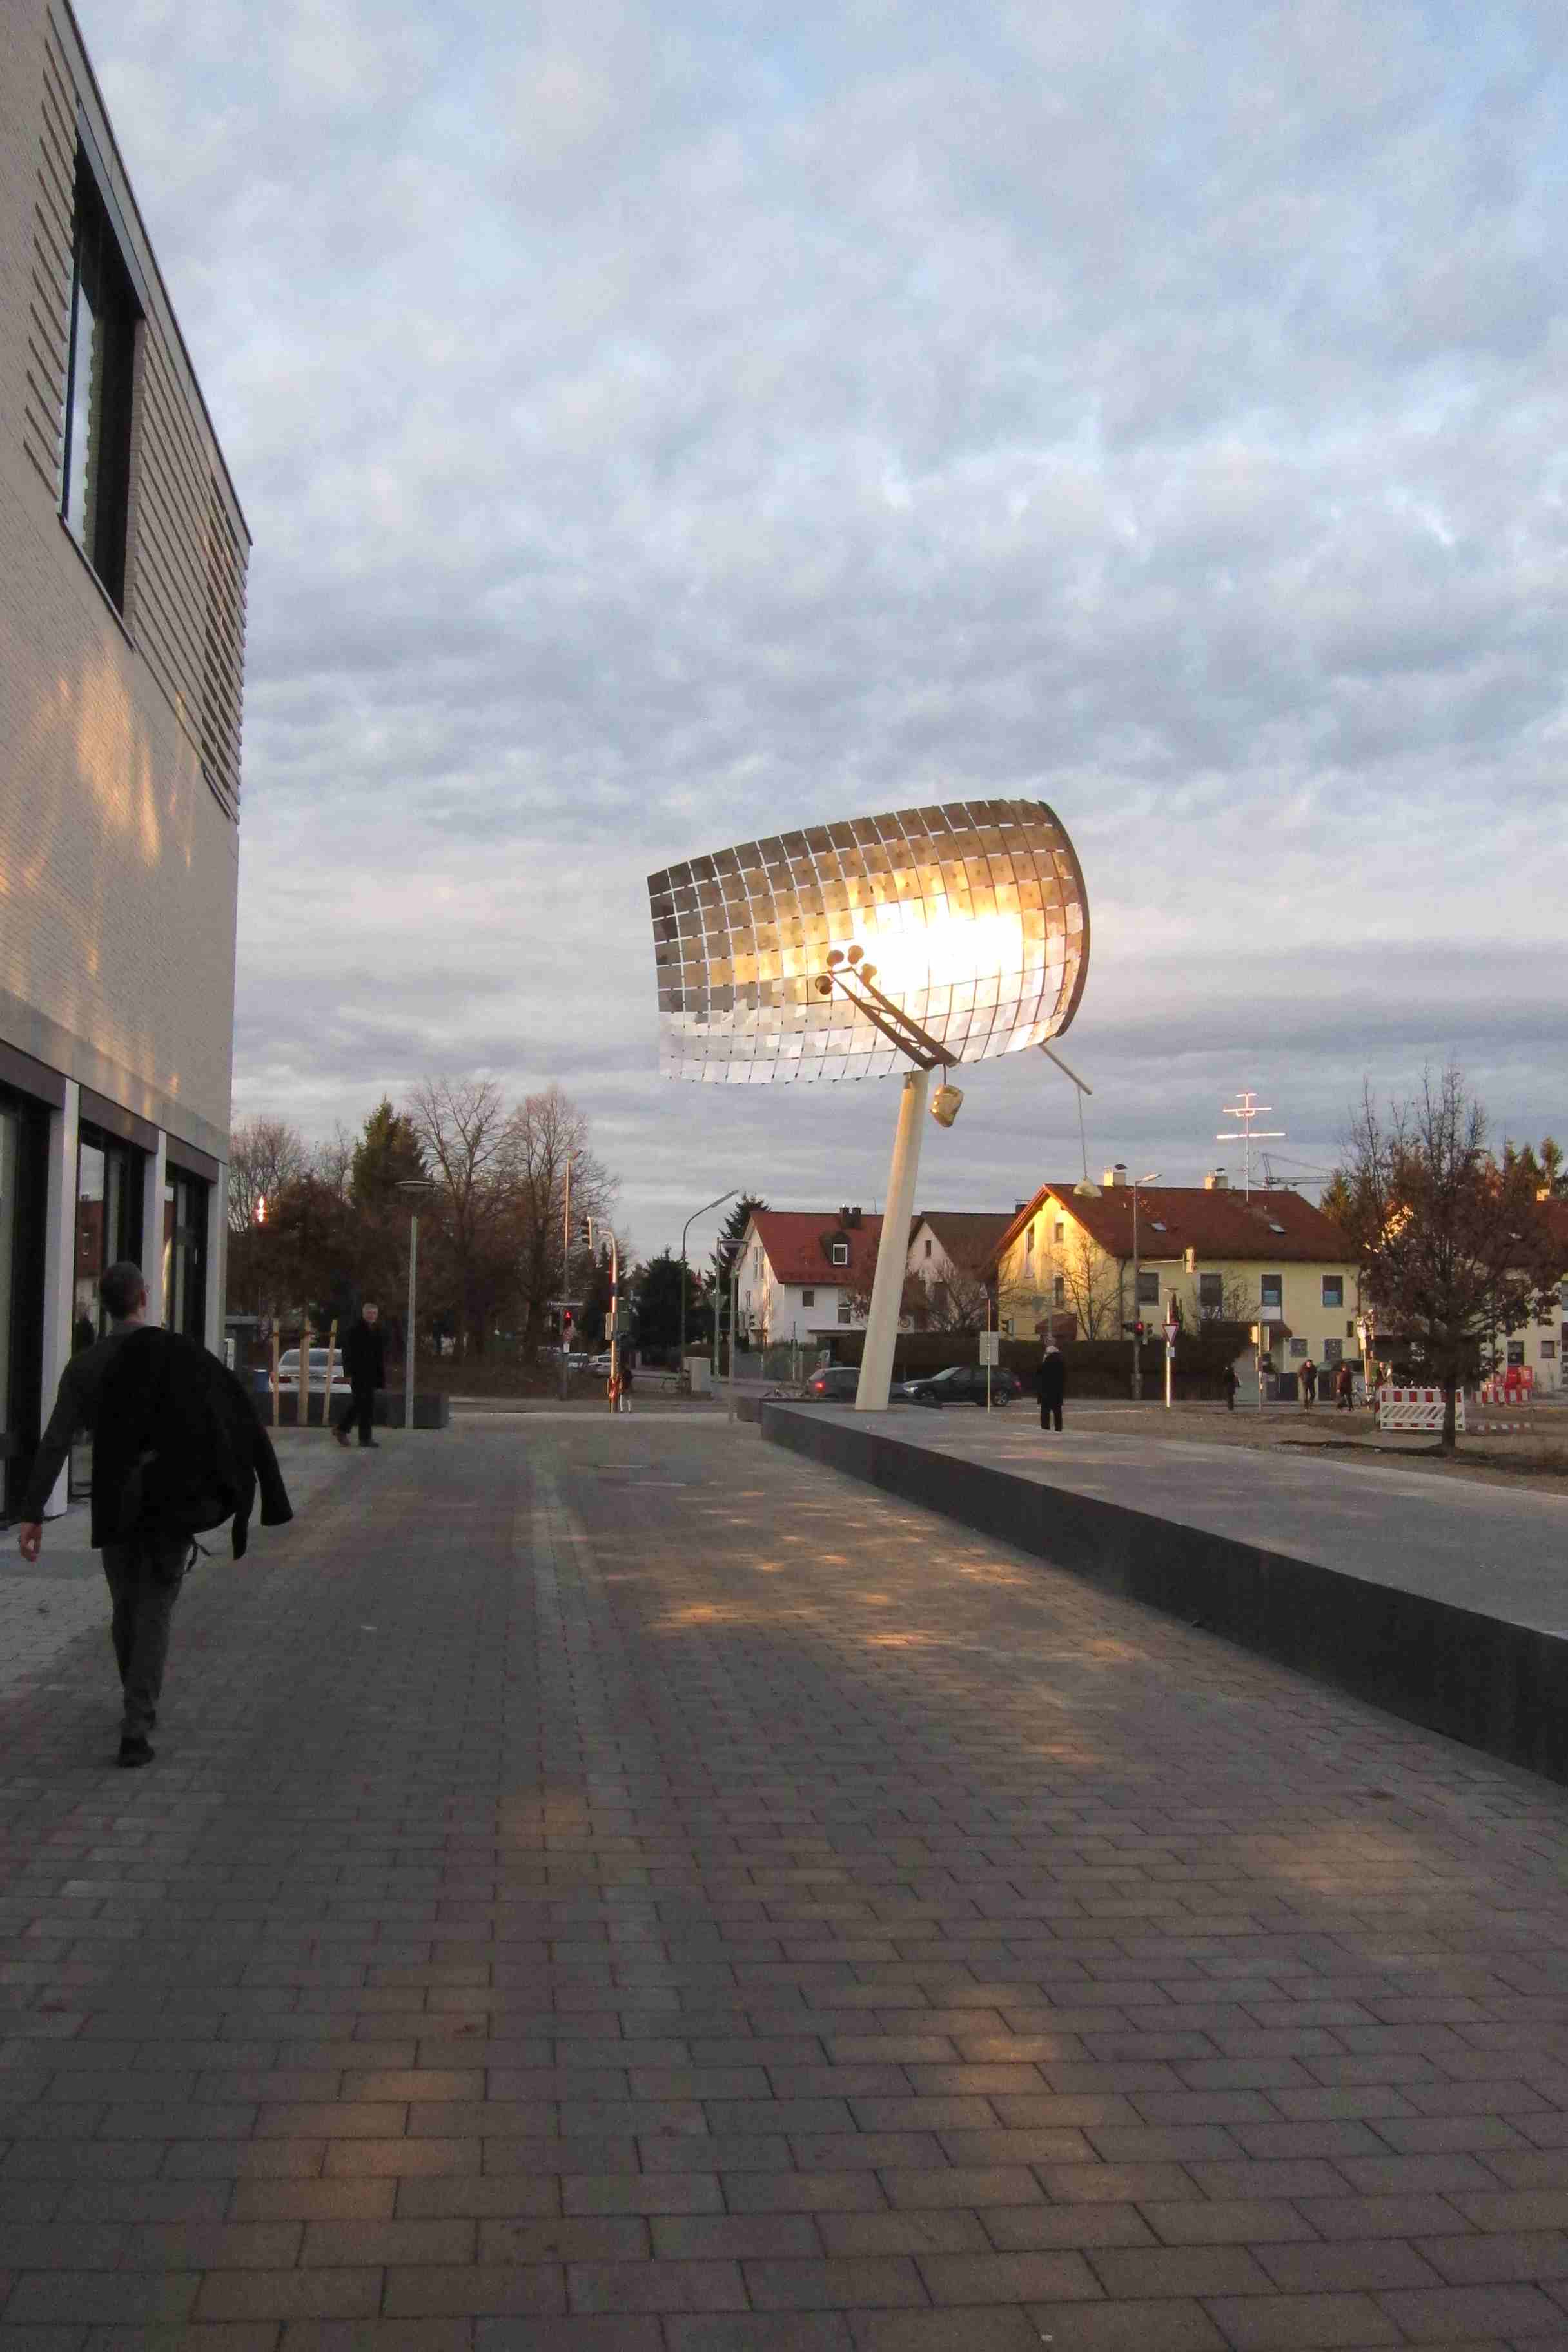  Public Art: "Platz an der Sonne" - Sculpture with Light Reflections